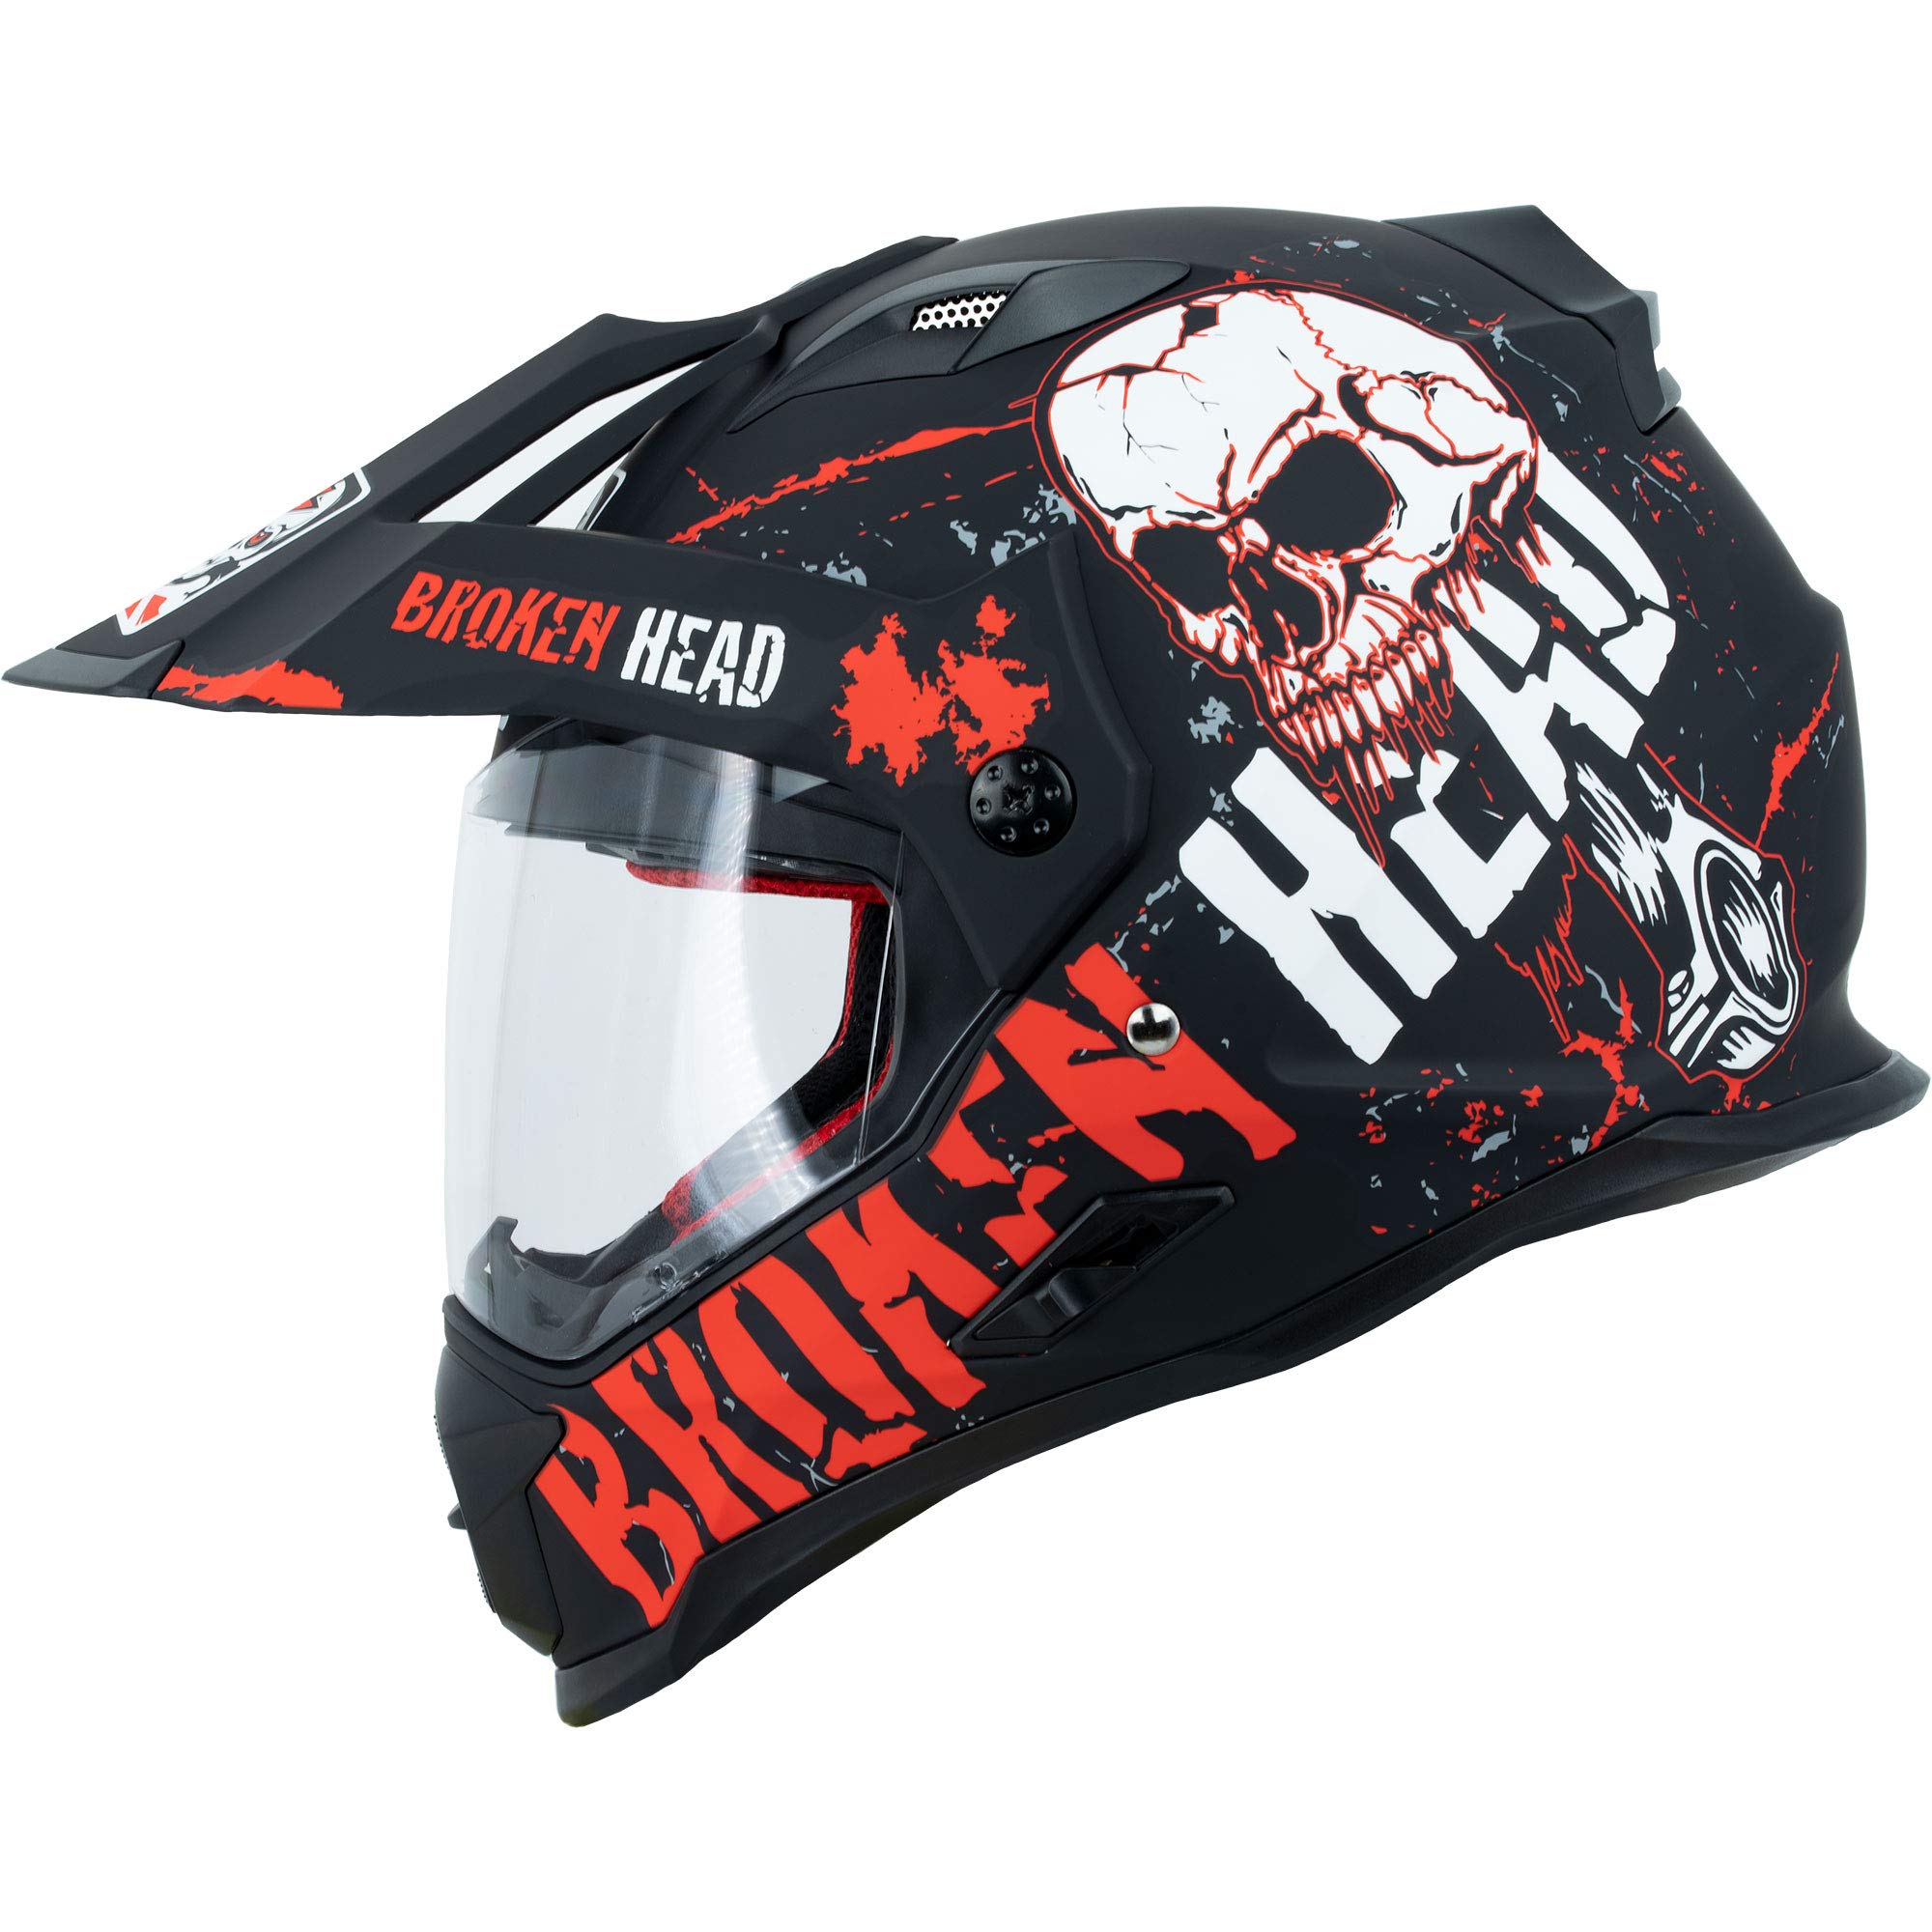 Broken Head Bone Crusher Motocross-Helm Rot mit Visier - Enduro MX Cross-Helm - Motorradhelm mit Sonnenblende (M 57-58 cm)